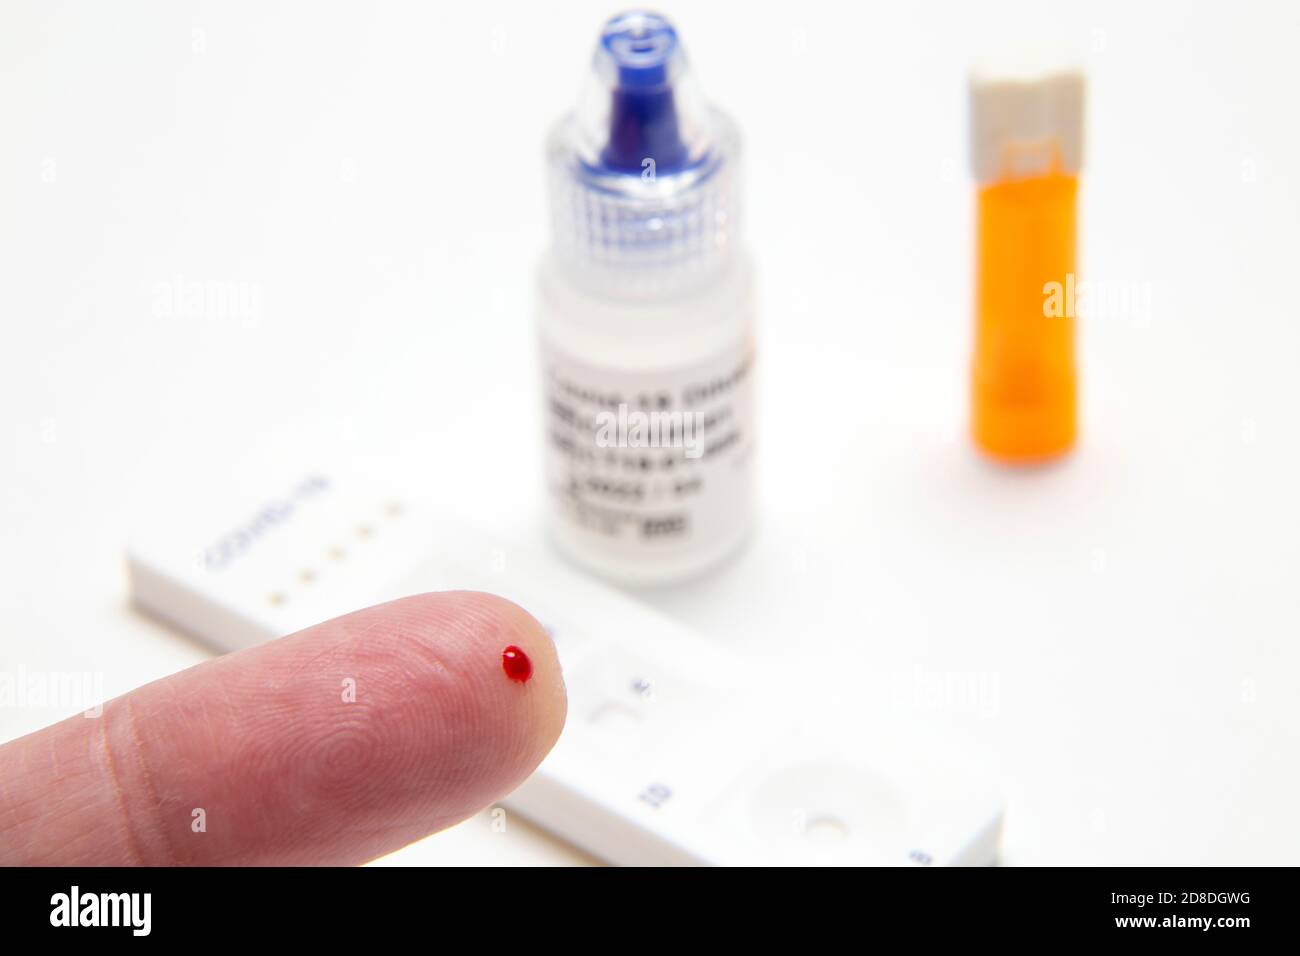 Prélèvement de doigt, taches de sang prêtes pour le coronavirus Covid 19 dans une étude de recherche sur les tests d'anticorps à domicile. Kit de test d'anticorps.pandémie,épidémie,test sanguin. Banque D'Images